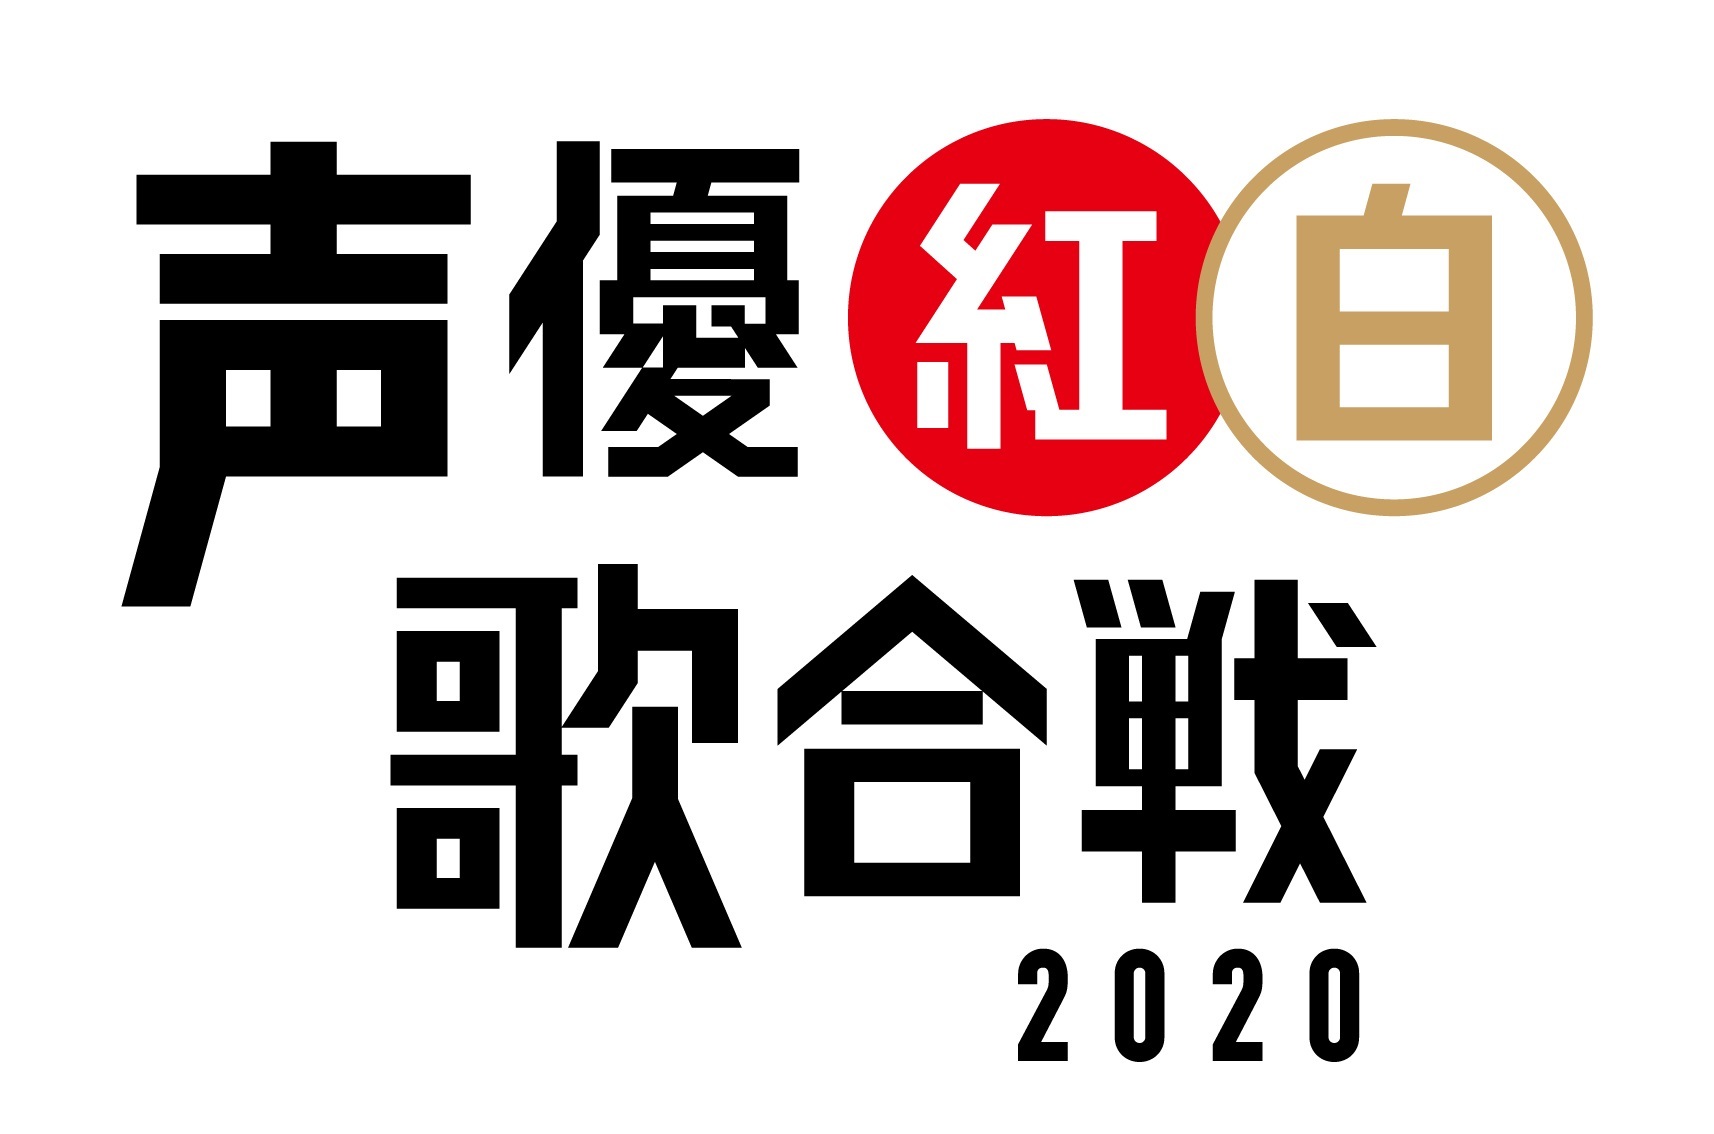 『声優紅白歌合戦2020』ロゴ (C)「声優紅白歌合戦」実行委員会